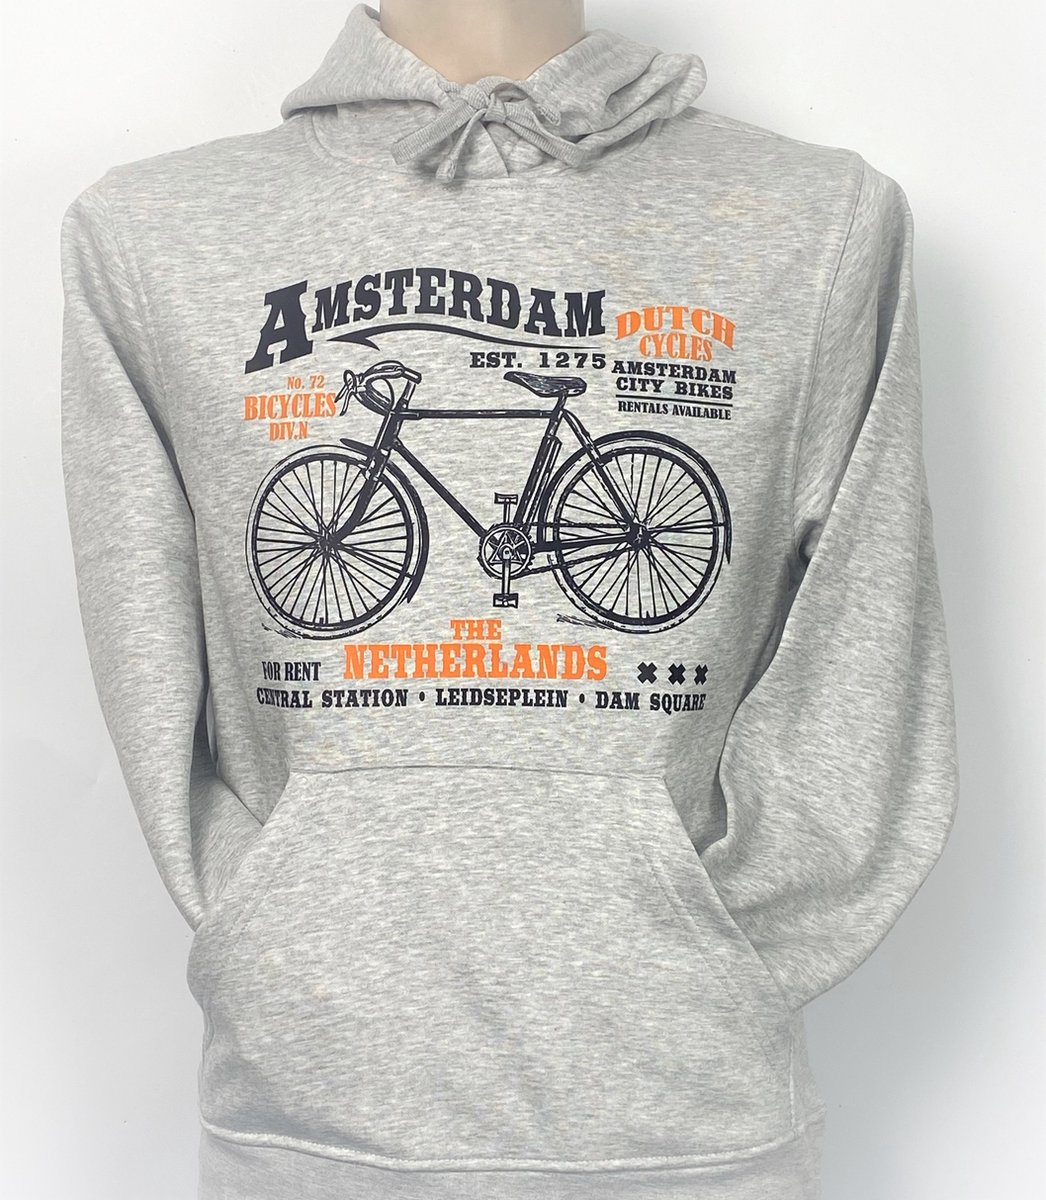 Hooded Sweater - Met Trekkoord - Capuchon - Chill - Trui - Vest - met capuchon - Outdoor - Fiets - 1275 -Amsterdam - Bike Town - Travel - Dam Square - City Bike - Sport Grey - Maat XS